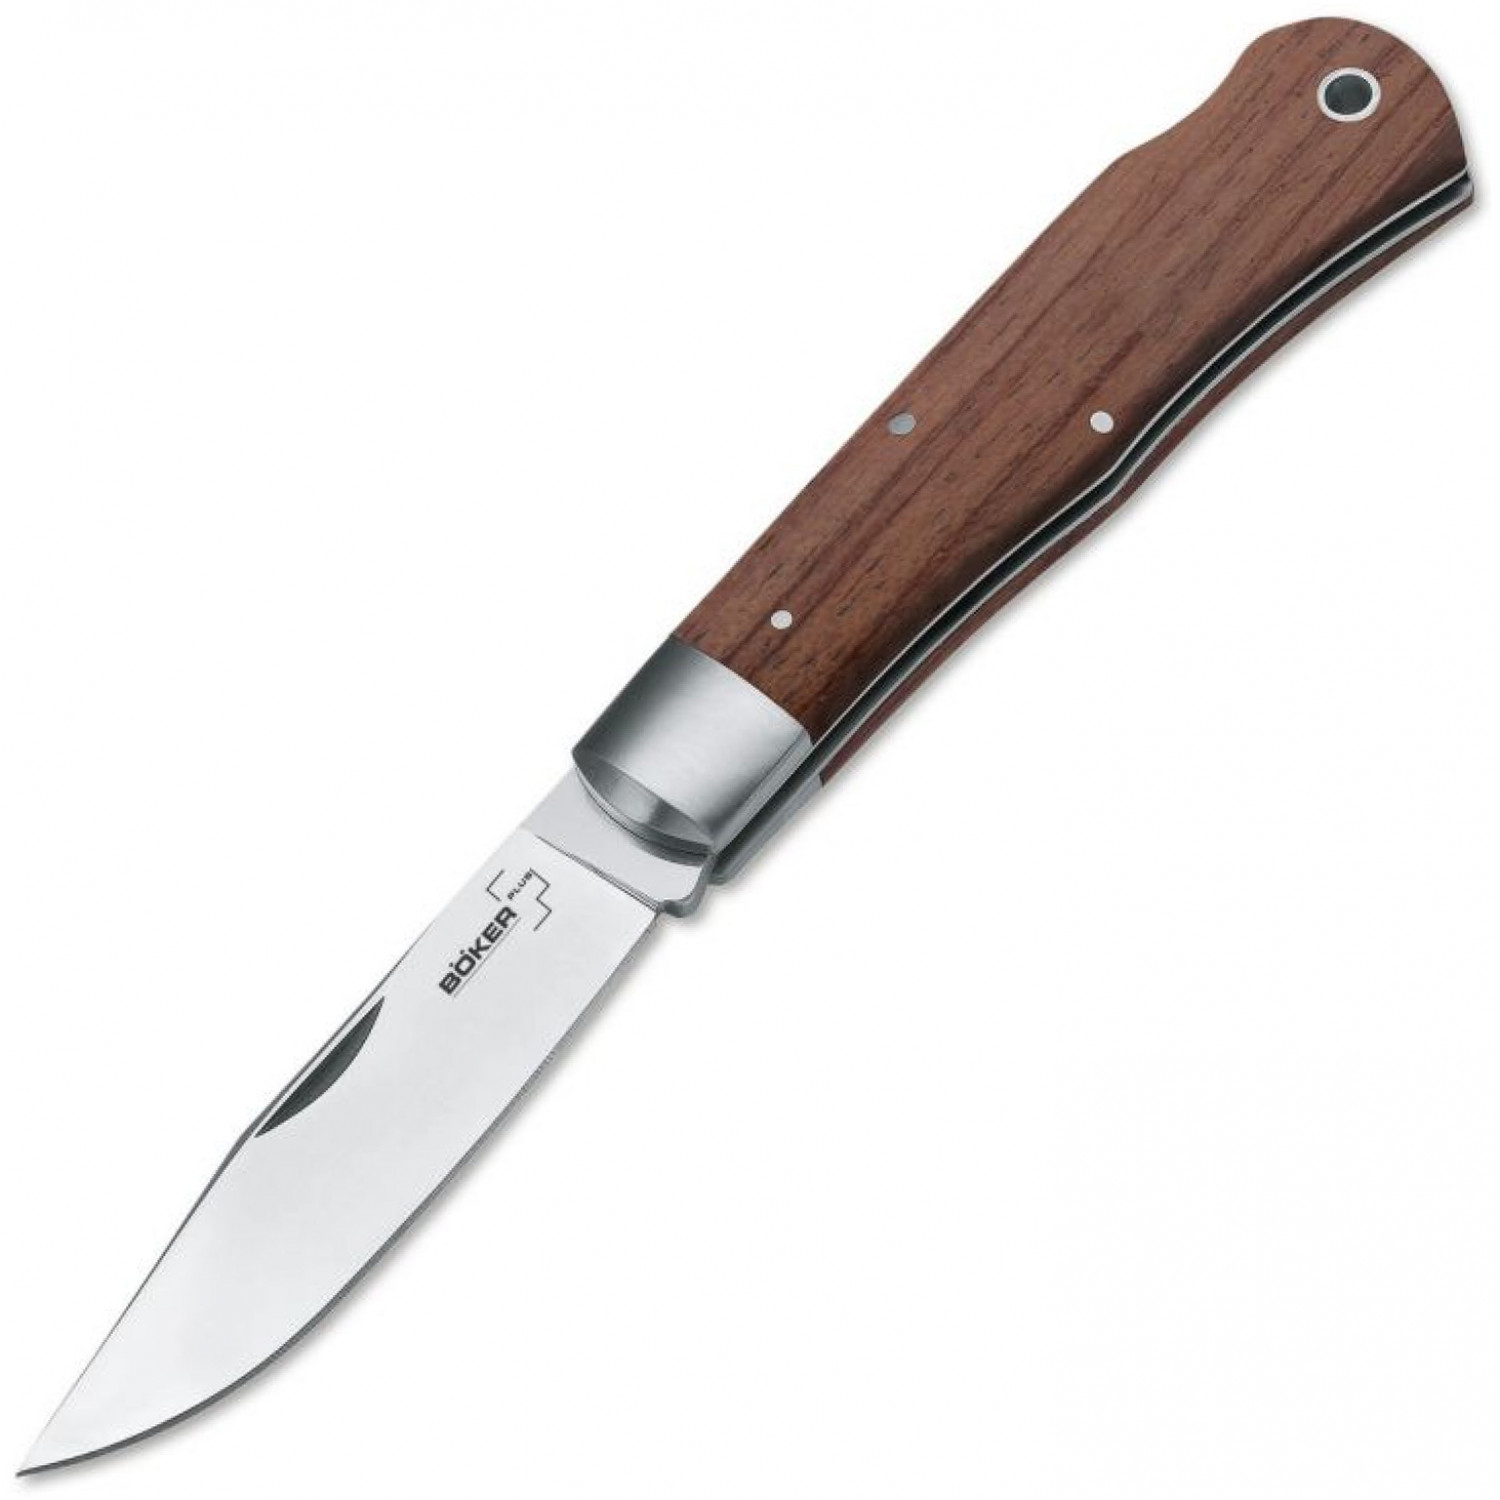 Нож складной Lockback Bubinga - Boker 01BO185, сталь 440C Satin Plain, рукоять дерево бубинго